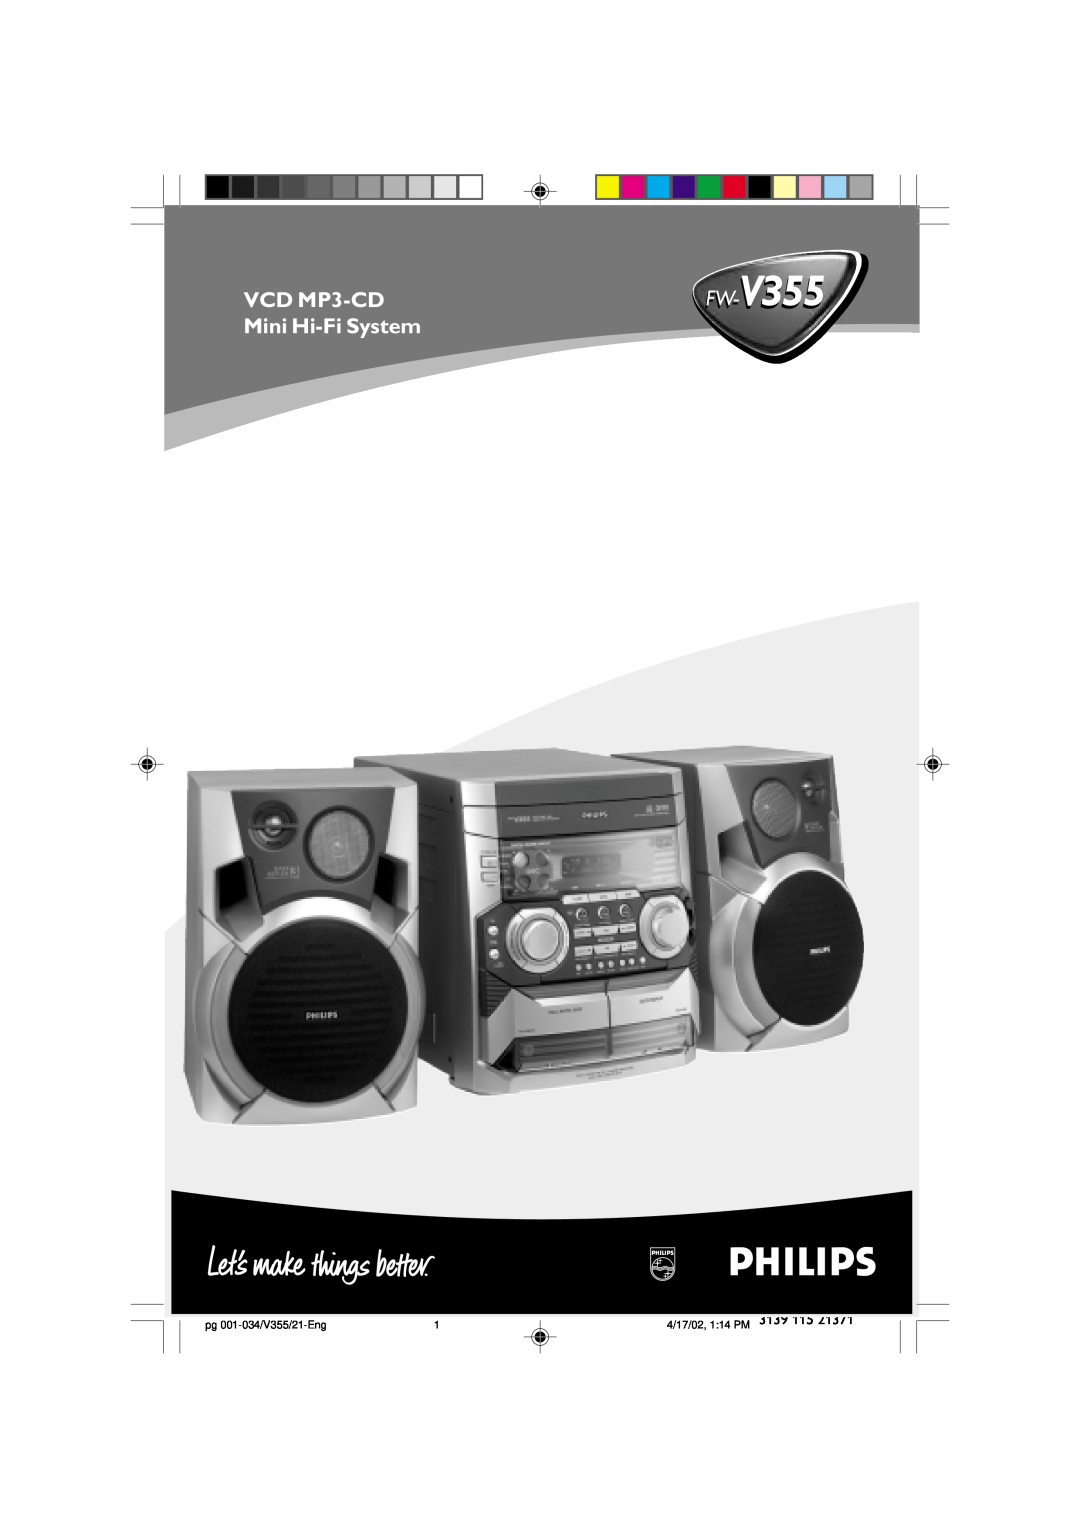 Philips FW-V355 manual VCD MP3-CD, Mini Hi-FiSystem, pg 001-034/V355/21-Eng, 4/17/02, 1 14 PM 